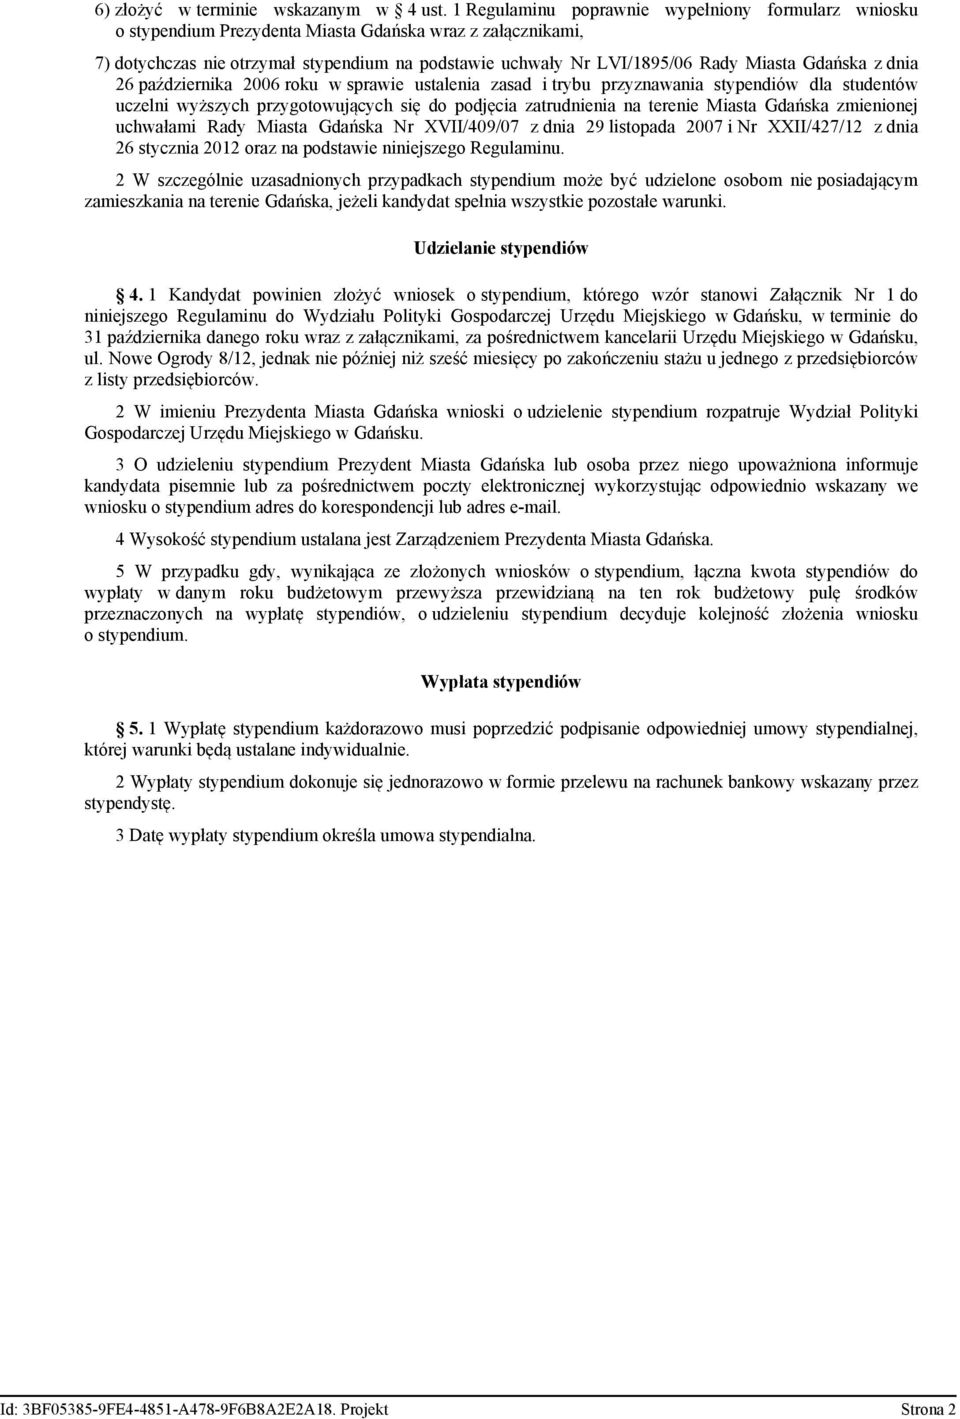 Gdańska z dnia 26 października 2006 roku w sprawie ustalenia zasad i trybu przyznawania stypendiów dla studentów uczelni wyższych przygotowujących się do podjęcia zatrudnienia na terenie Miasta